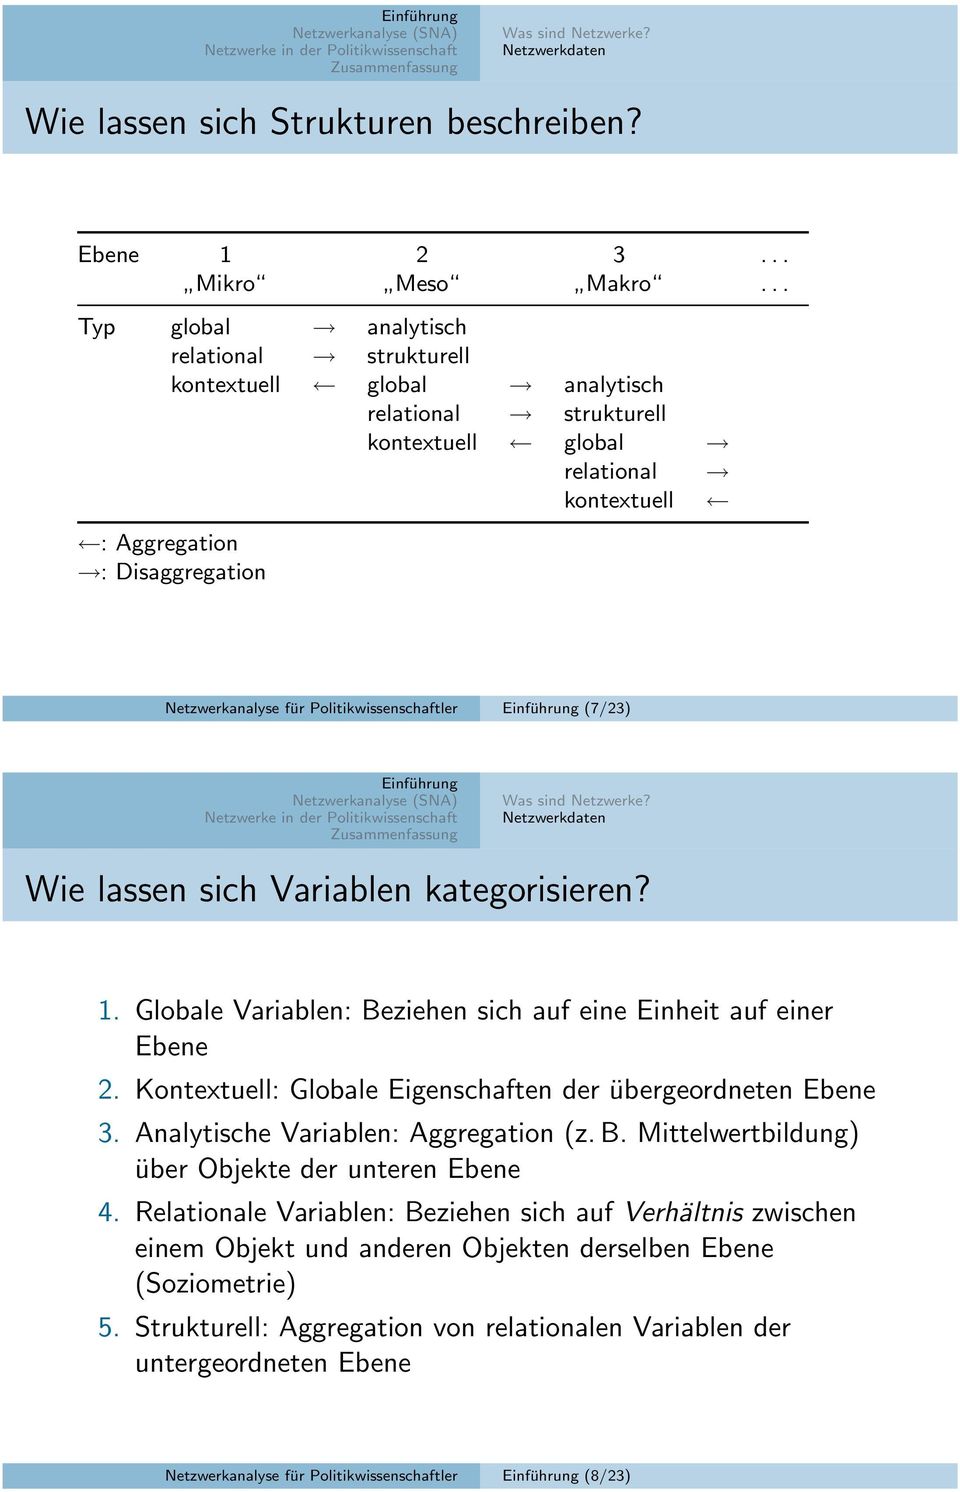 Politikwissenschaftler (7/23) Wie lassen sich Variablen kategorisieren? 1. Globale Variablen: Beziehen sich auf eine Einheit auf einer Ebene 2.